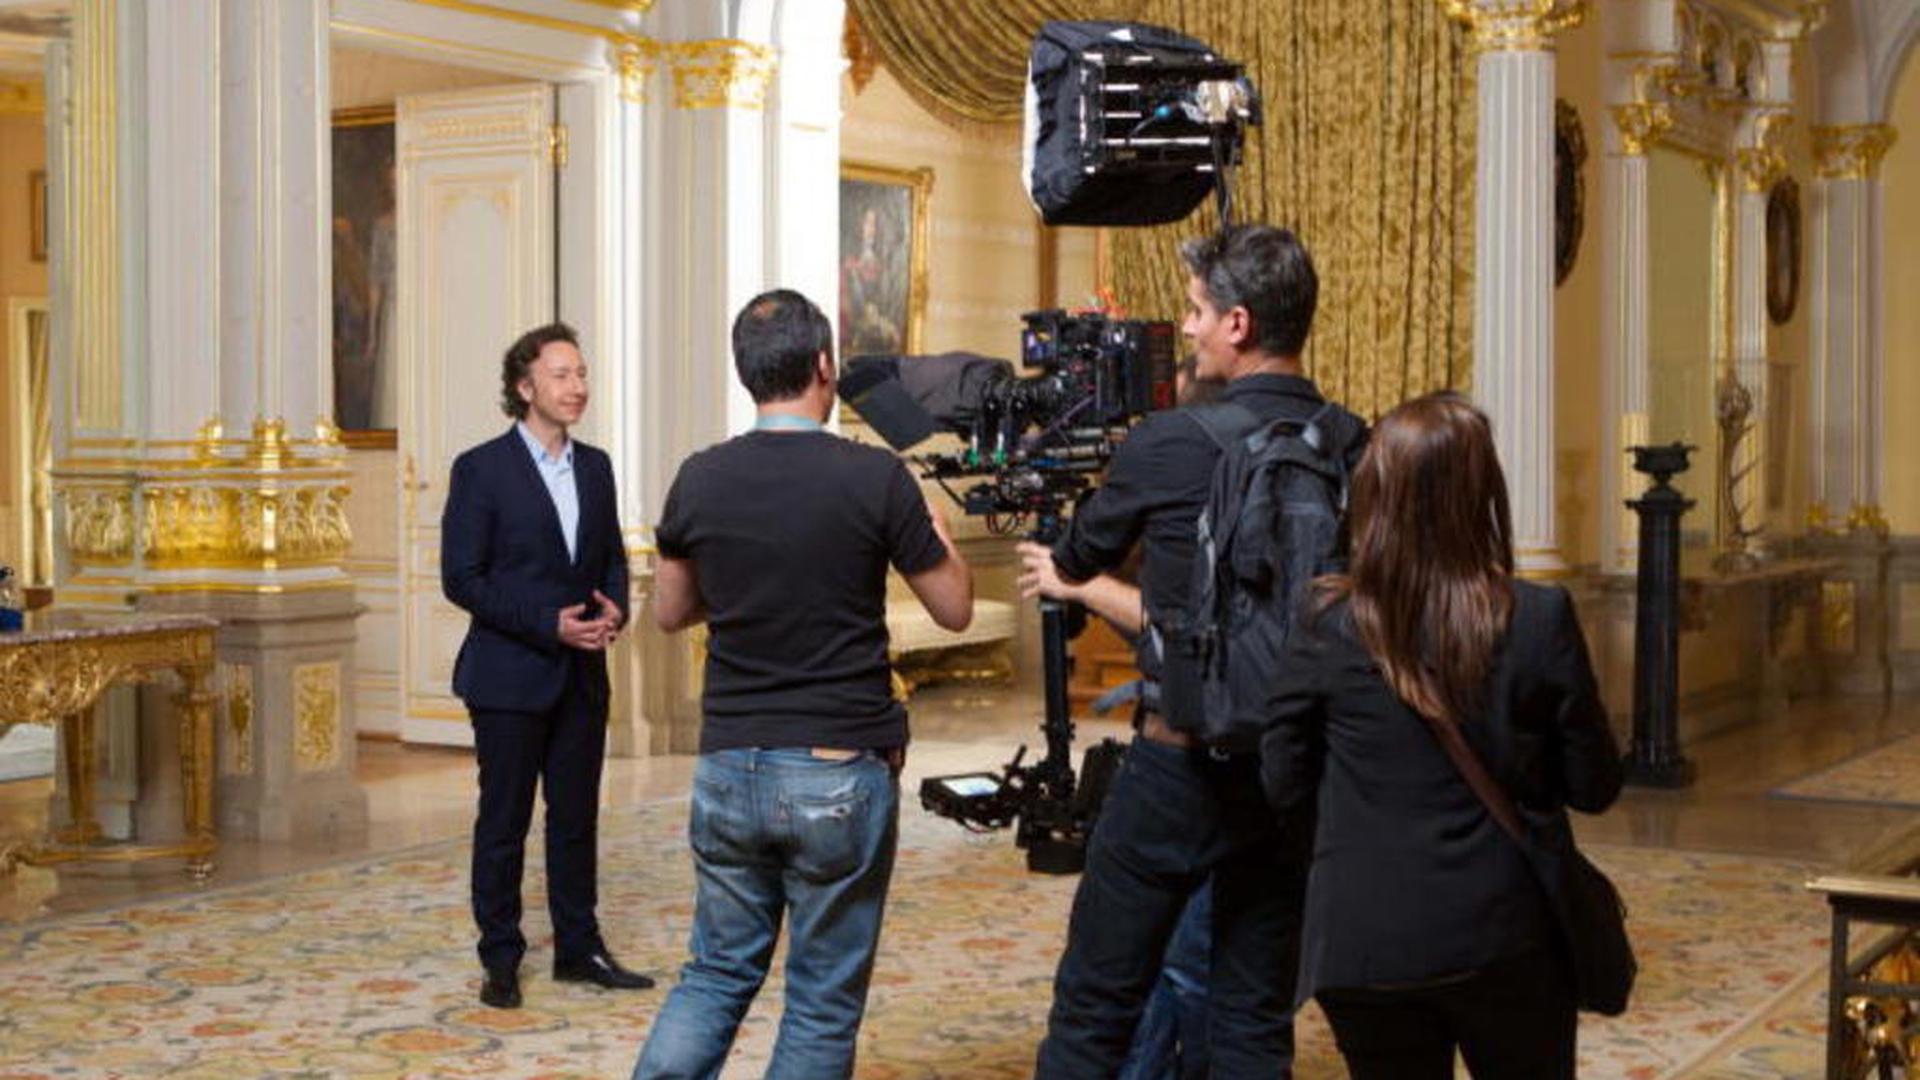 Tournage du documentaire dans le palais grand-ducal, les 25 et 26 avril 2014